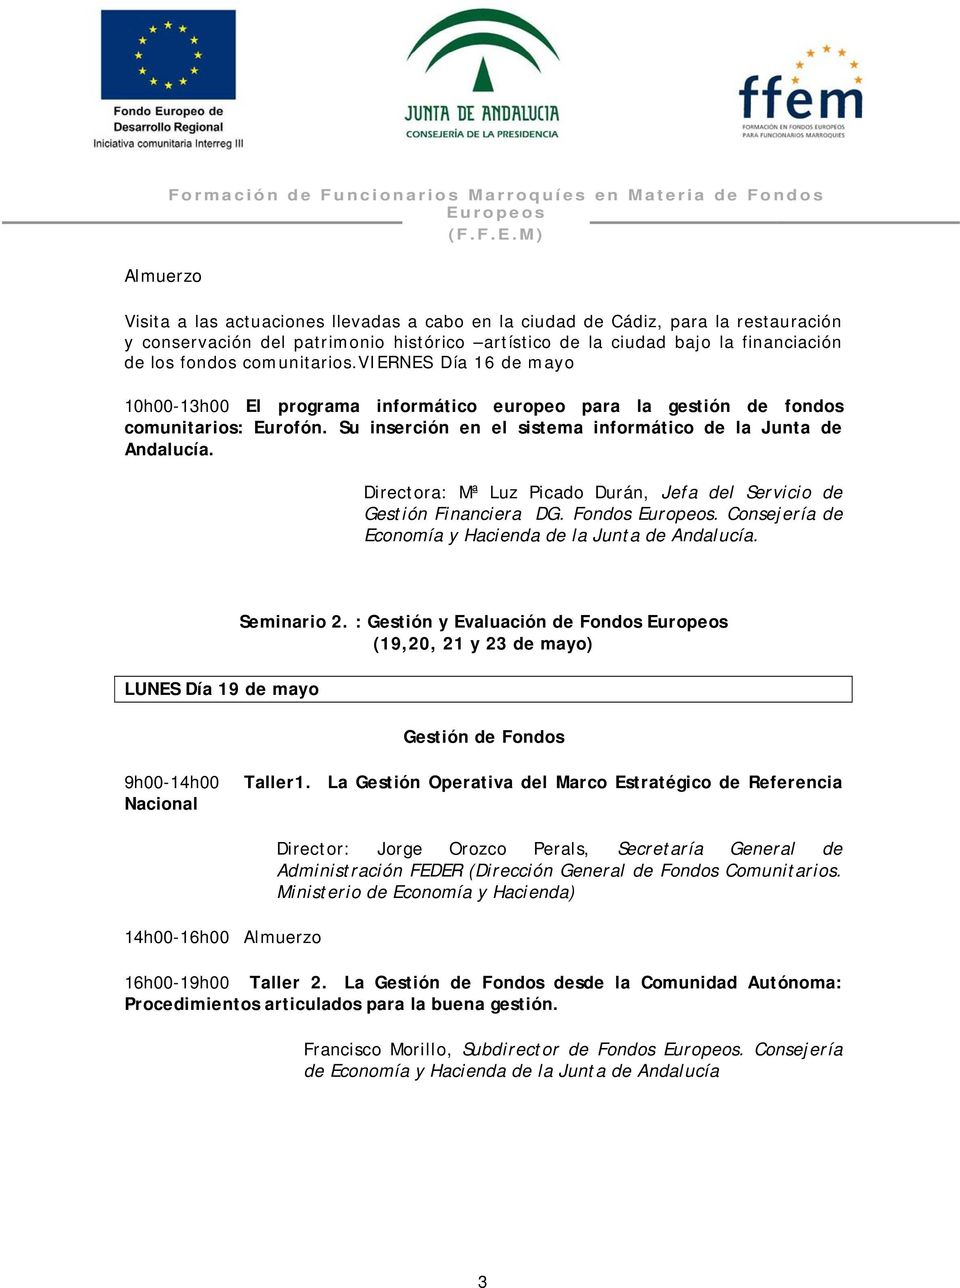 Su inserción en el sistema informático de la Junta de Andalucía. Directora: Mª Luz Picado Durán, Jefa del Servicio de Gestión Financiera DG. Fondos.